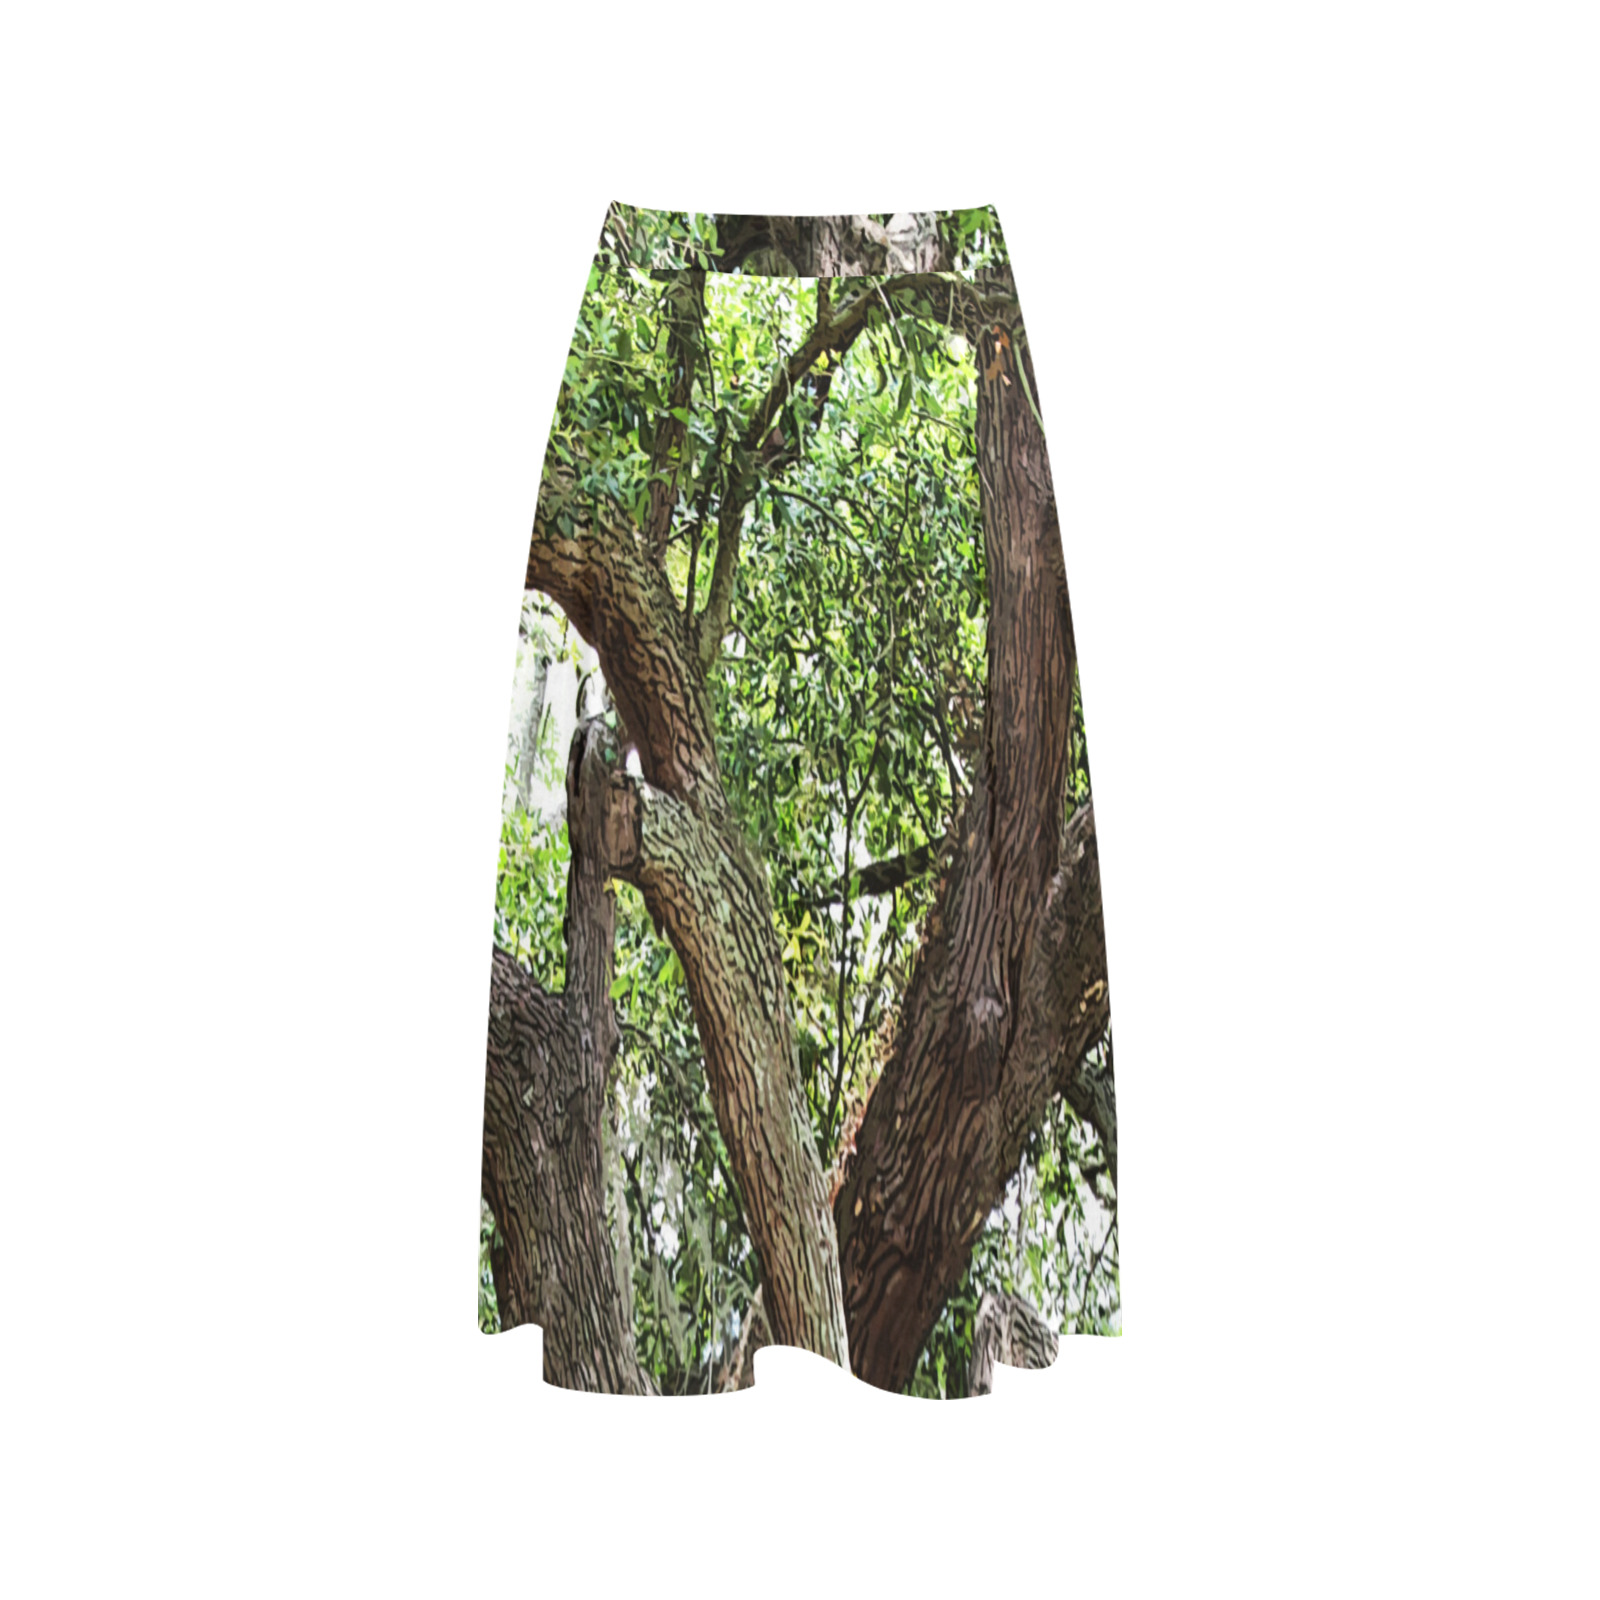 Oak Tree In The Park 7659 Stinson Park Jacksonville Florida Mnemosyne Women's Crepe Skirt (Model D16)